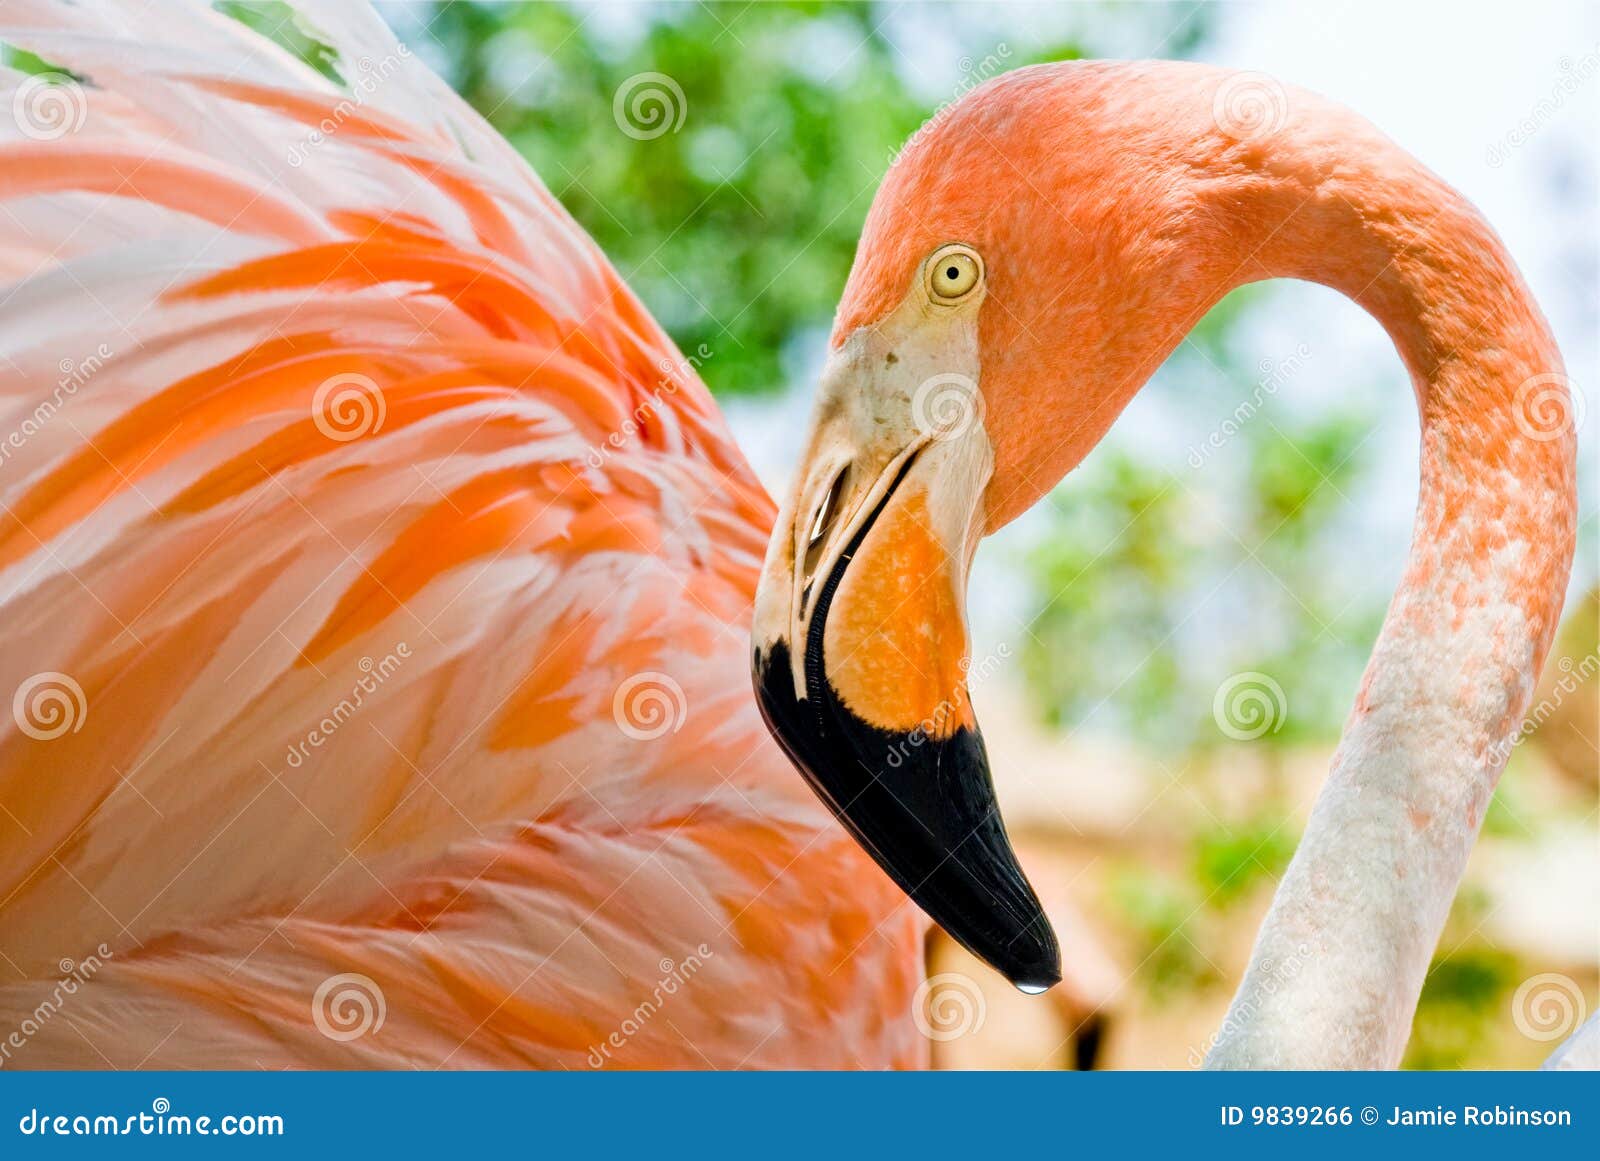 close up of a stunning pink flamingo